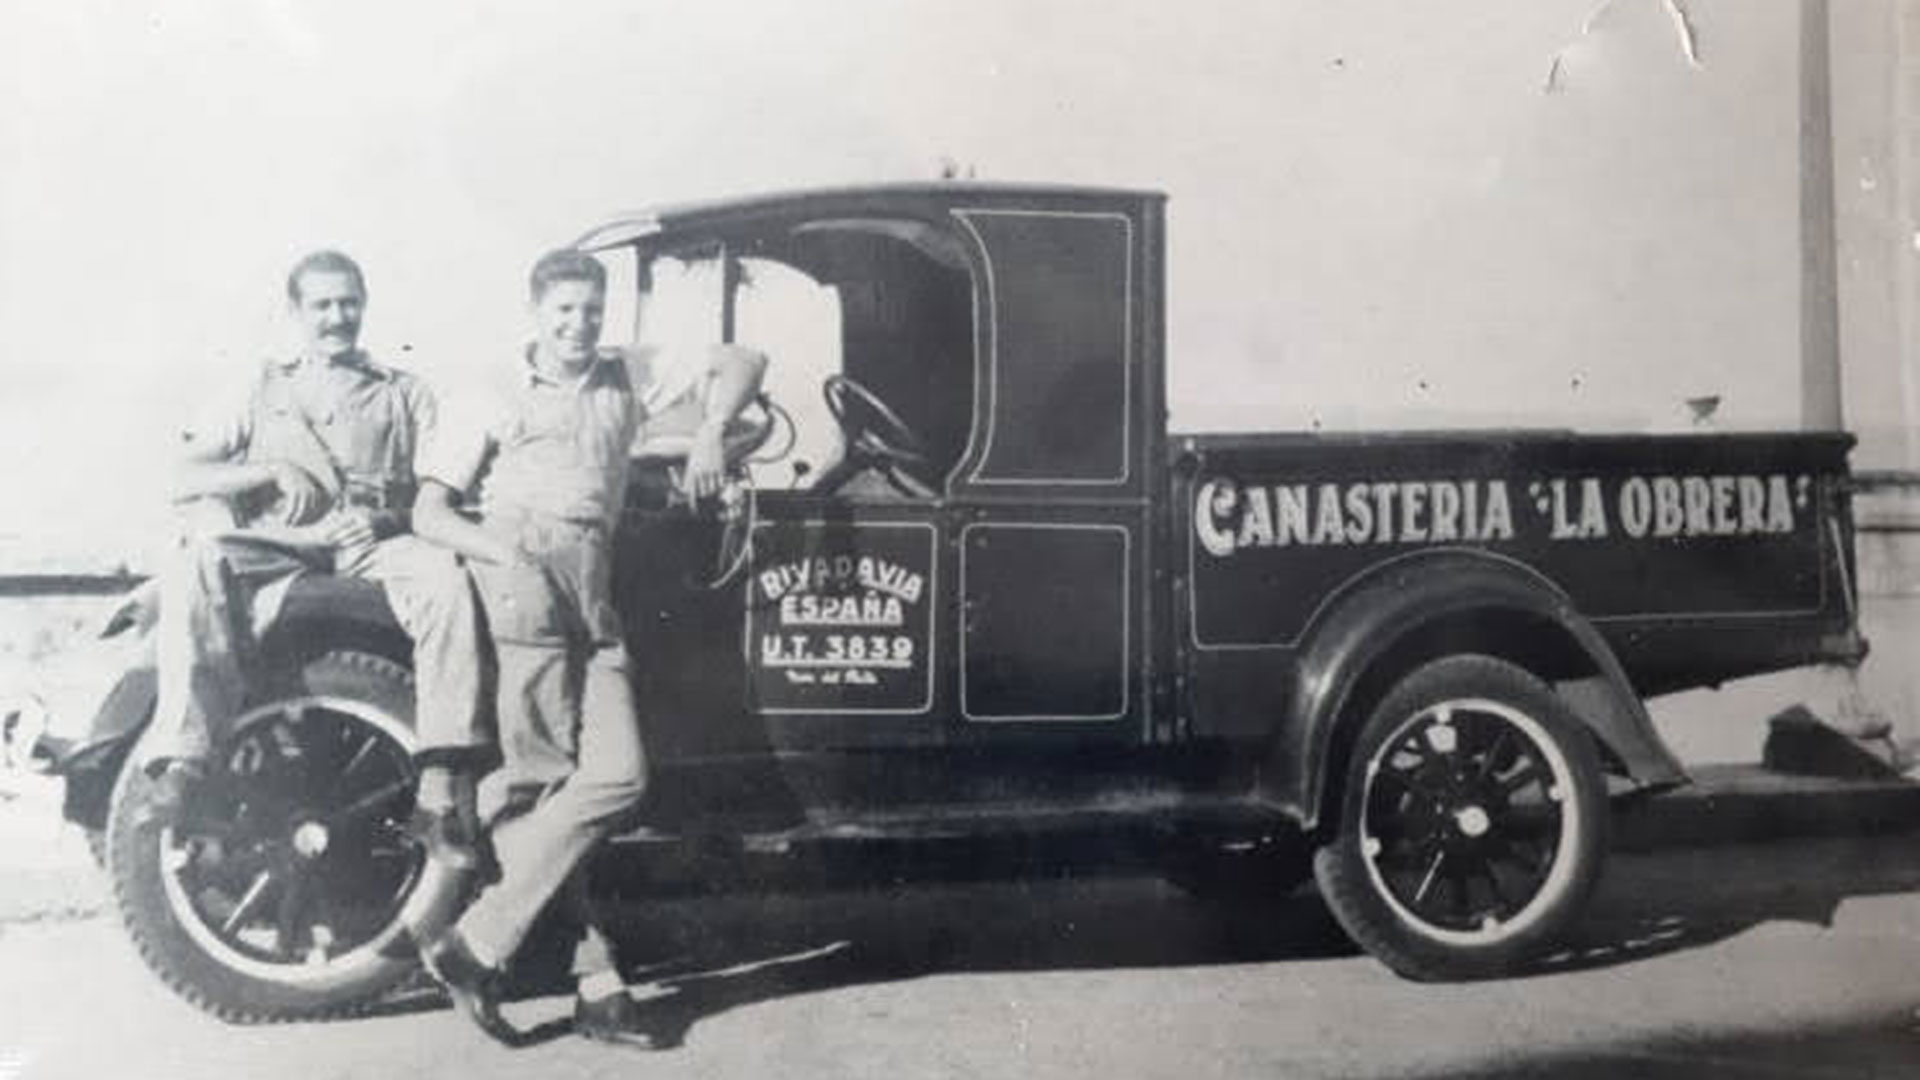 La canastería "La Obrera" fue una empresa fundada en 1938 por Reymundo Cano, un inmigrante español que aprendió el oficio de manera autodidacta